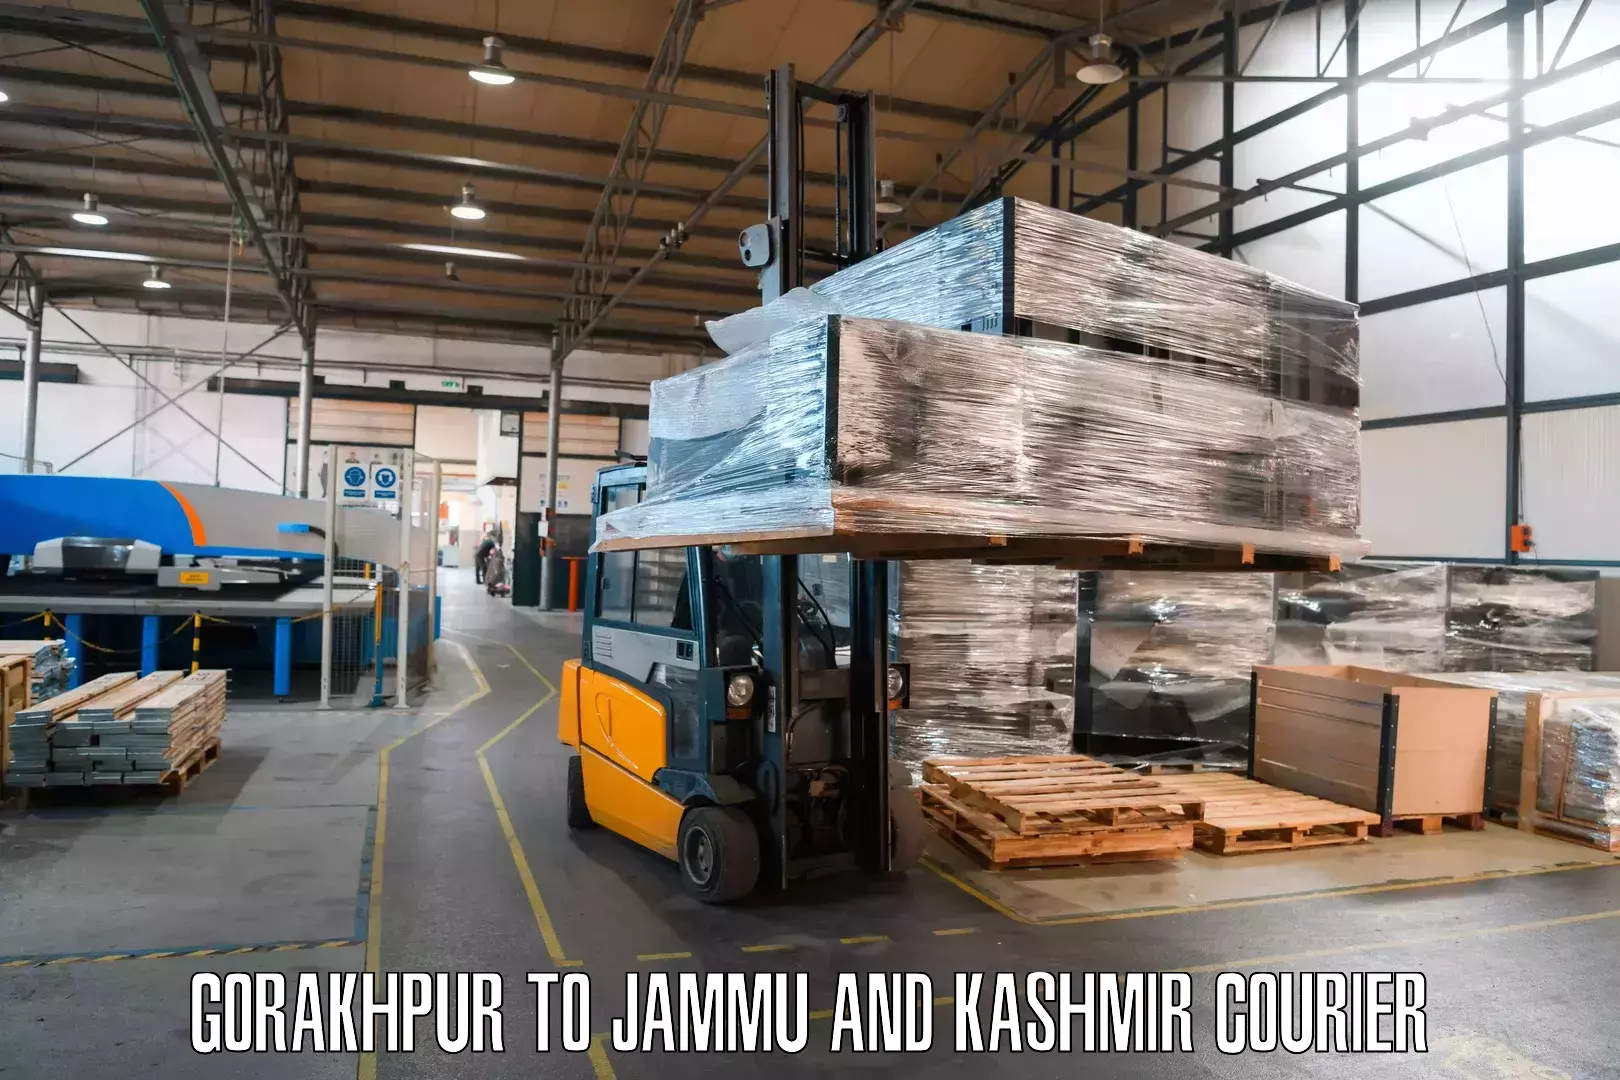 Enhanced shipping experience Gorakhpur to Srinagar Kashmir